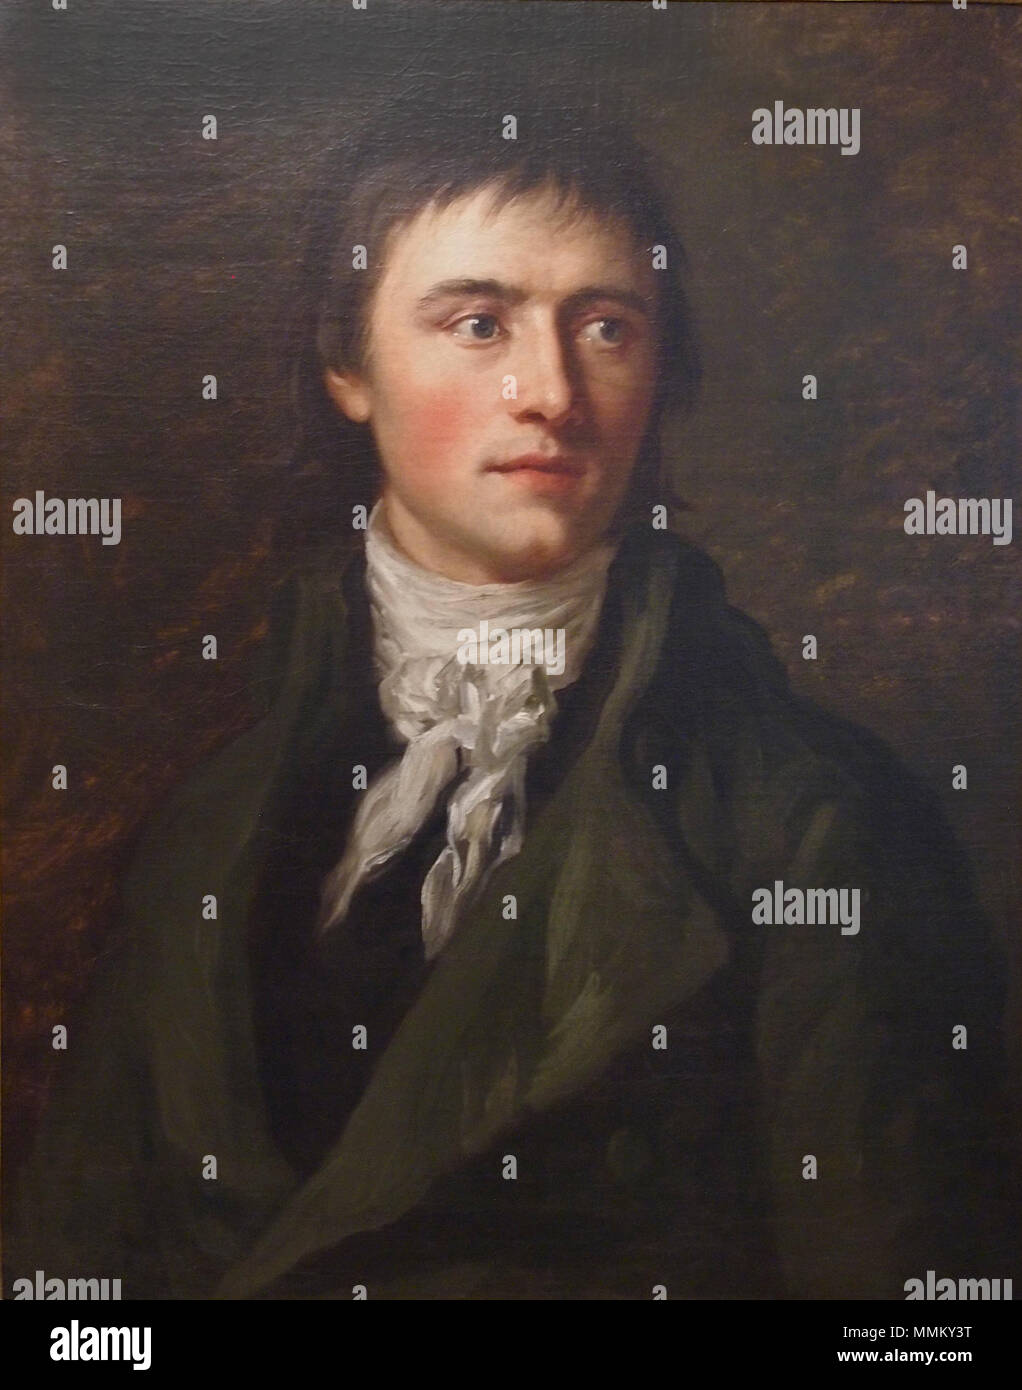 Heinrich von Kleist. circa 1808. Anton Graff Heinrich von Kleist (1) Stock Photo